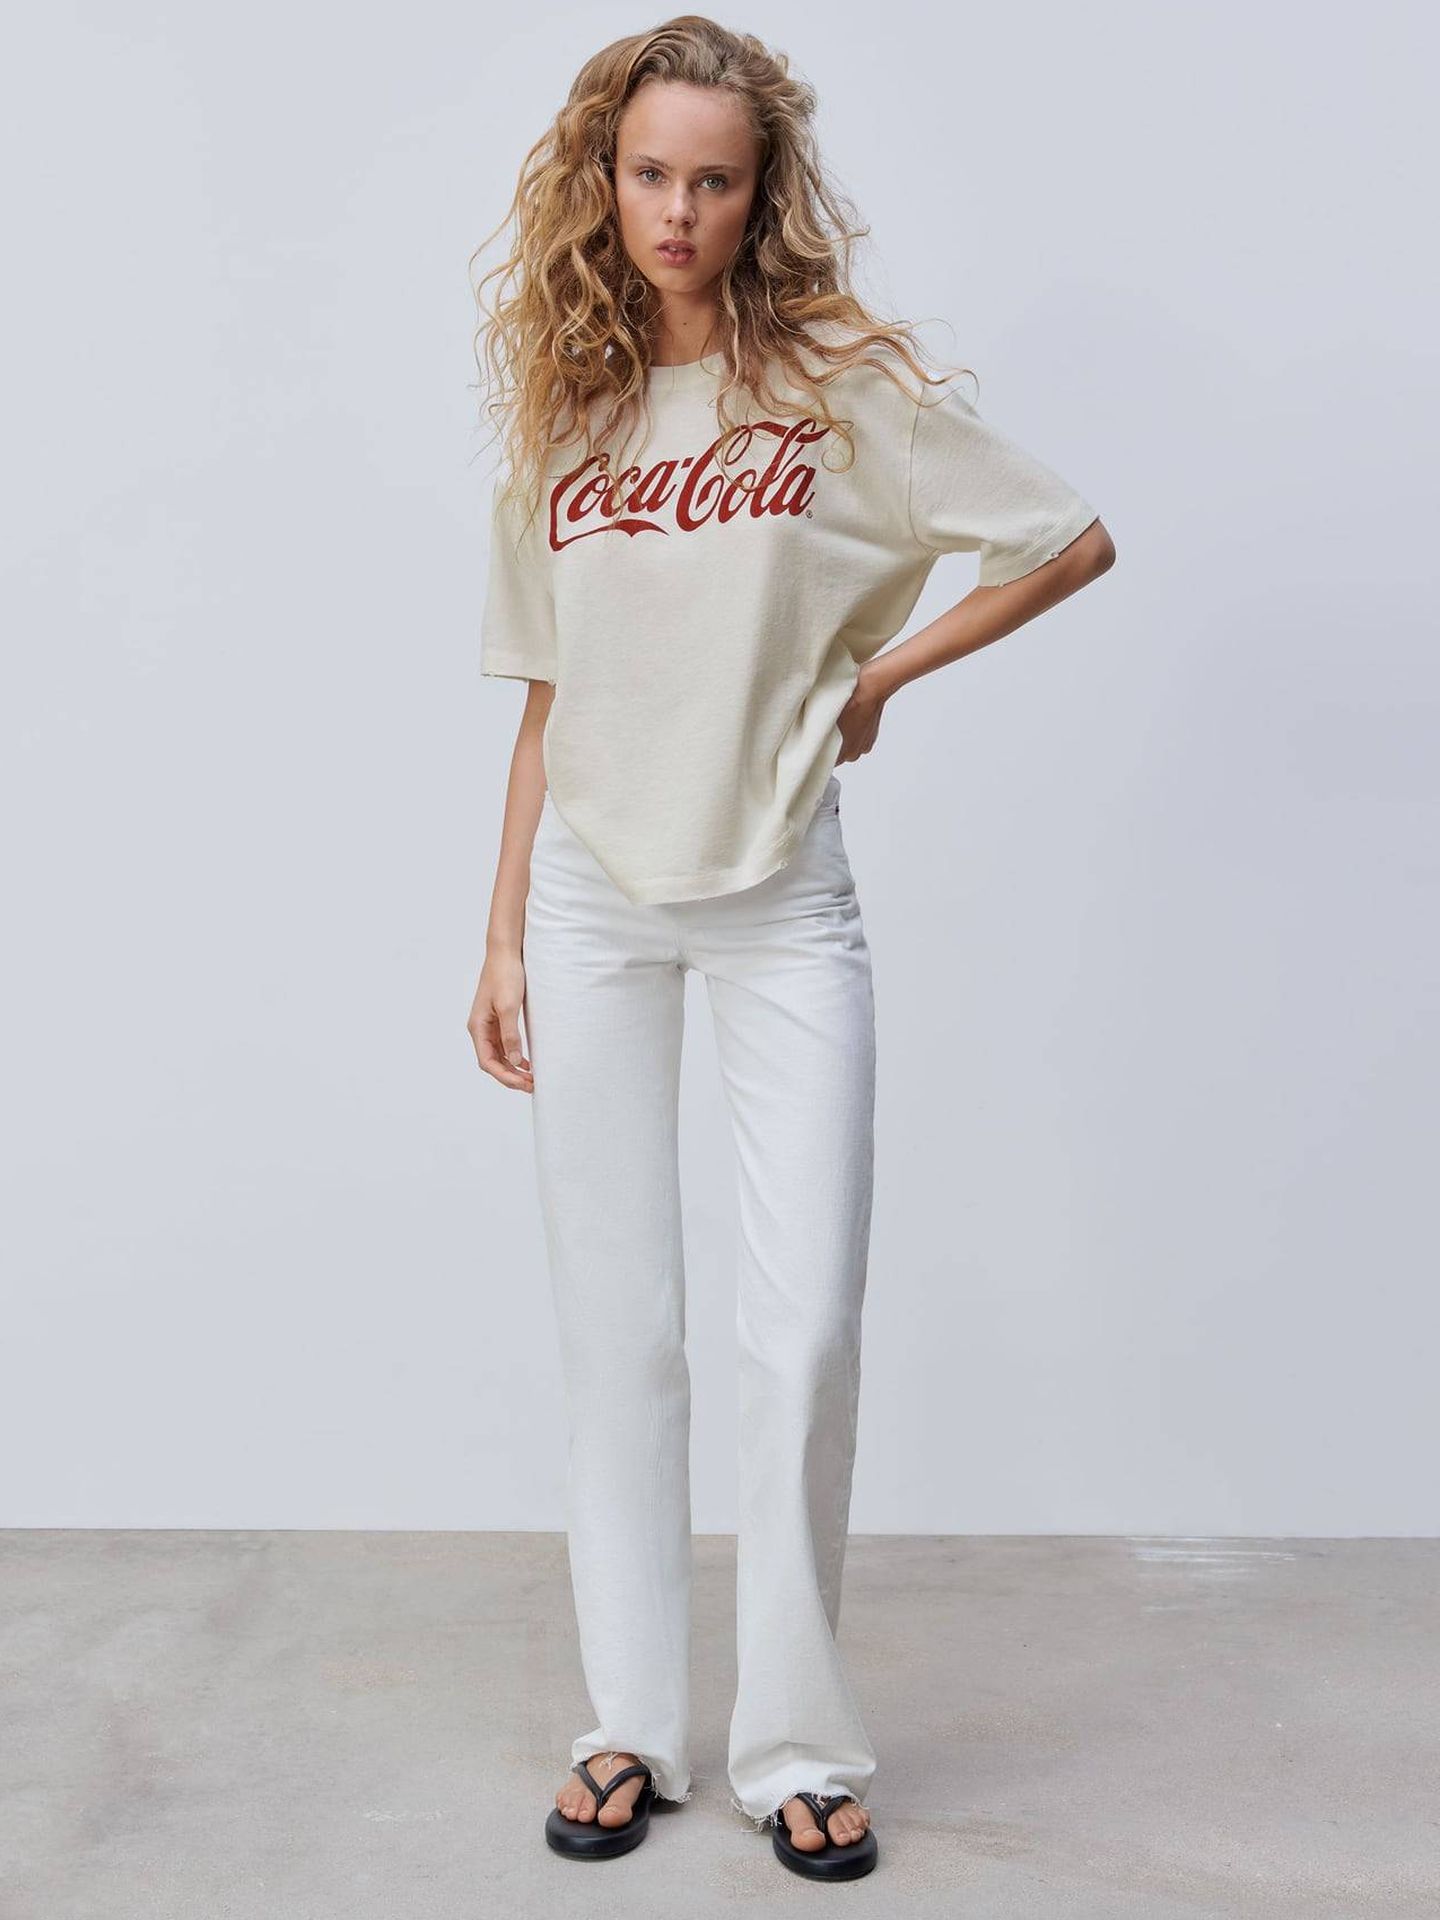 Camiseta de Coca-Cola de Zara. (Cortesía)